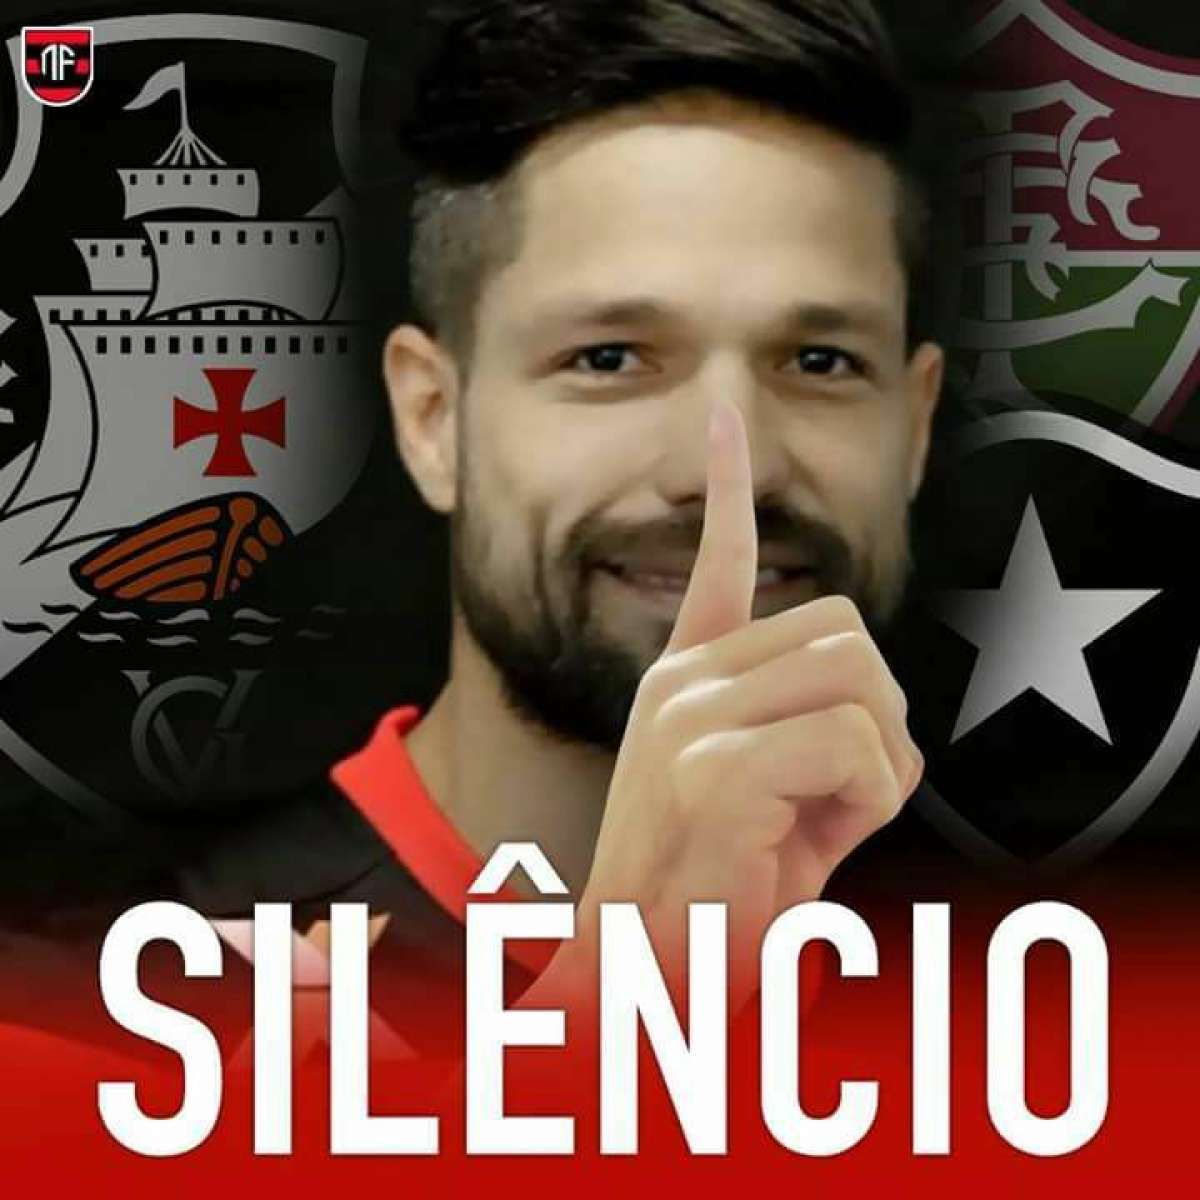 Show de memes! Torcedores do Flamengo se empolgam com vitória